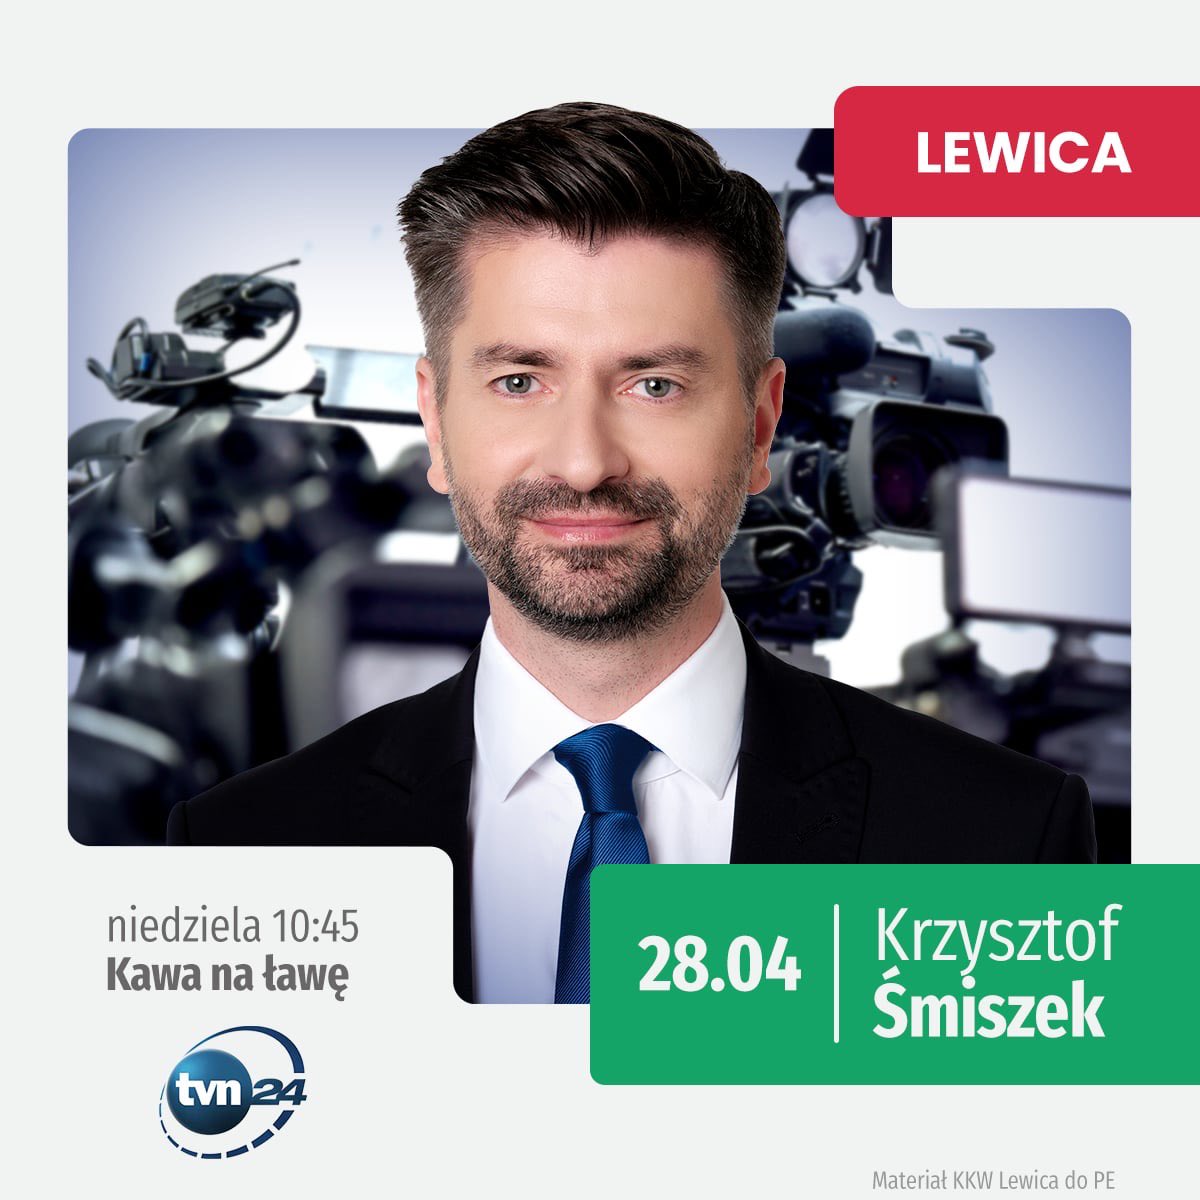 📺 Wiceminister Sprawiedliwości @K_Smiszek jutro o 10:45 będzie gościem programu @tvn24kawa w @tvn24 Zachęcamy do oglądania! #LewicaWMediach #EuropaDlaCiebie